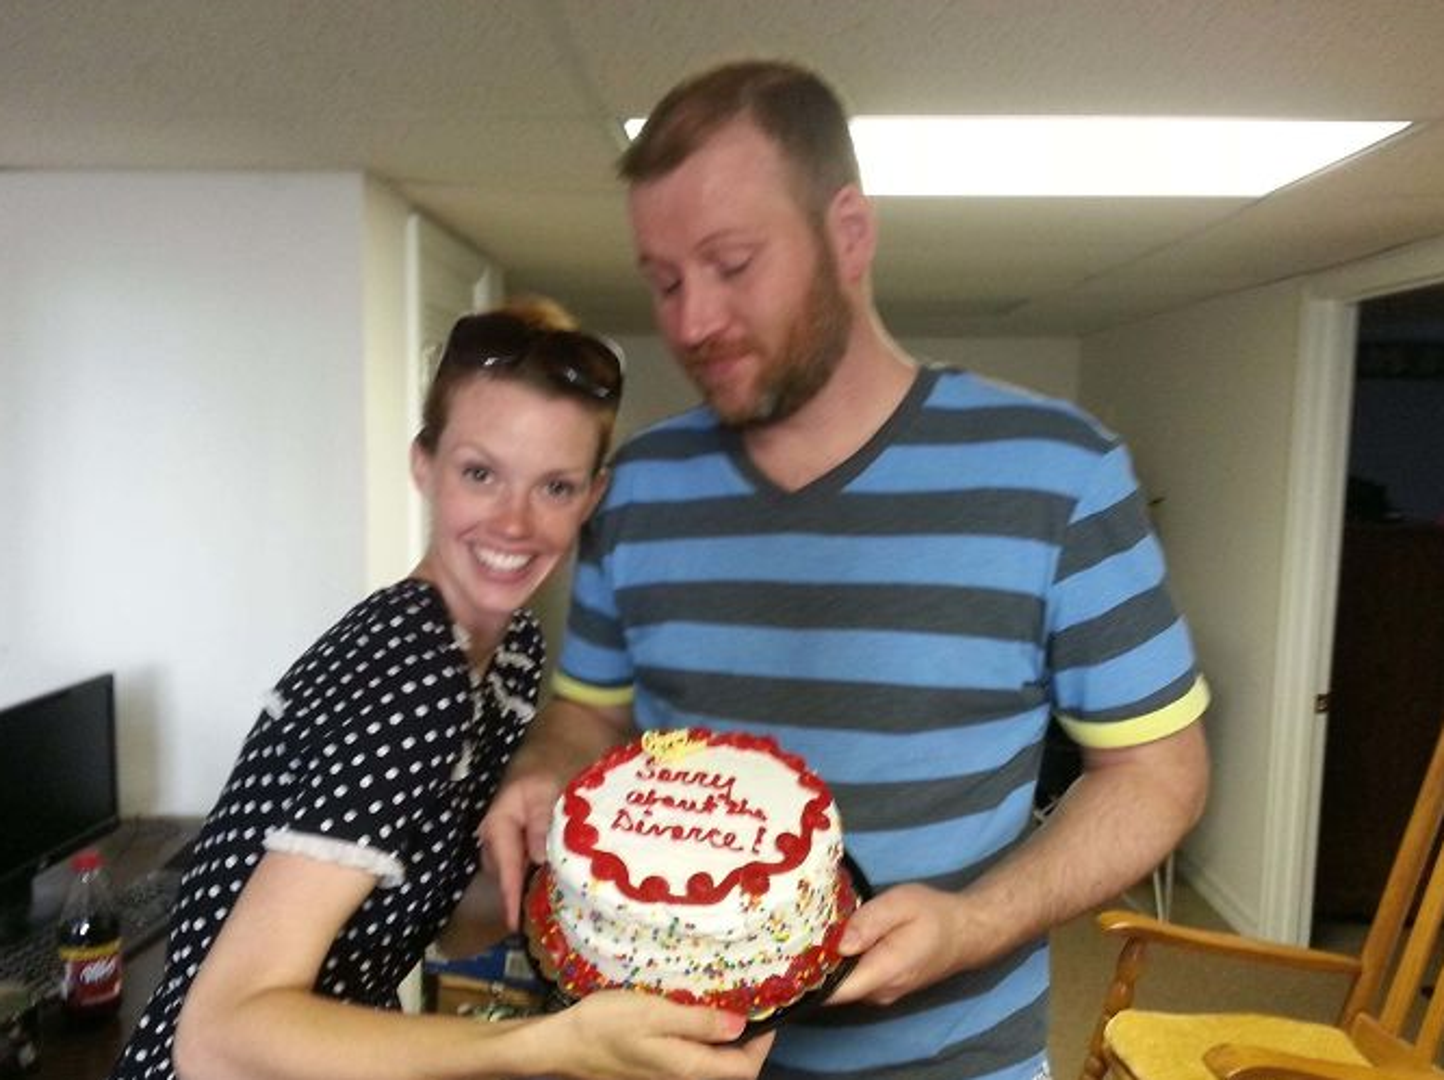 Iako su pred rastavom braka, odlučila mu je doći čestitati rođendan i donijeti tortu na koju je napisala prigodan tekst: "Oprosti zbog rastave!"